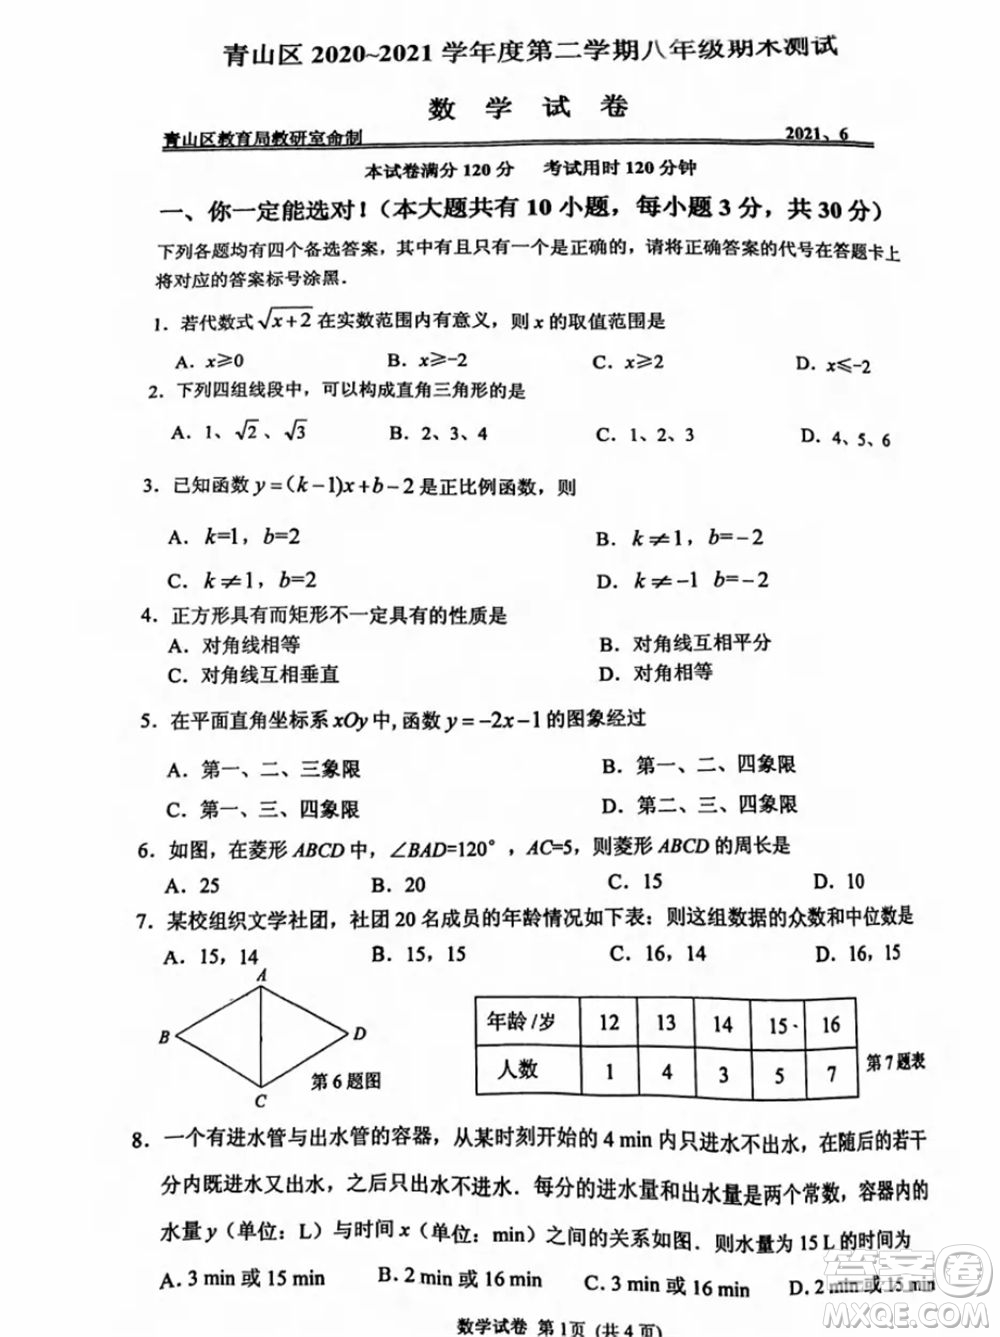 武汉市青山区2020-2021年度下学期八年级期末考试数学试卷及答案